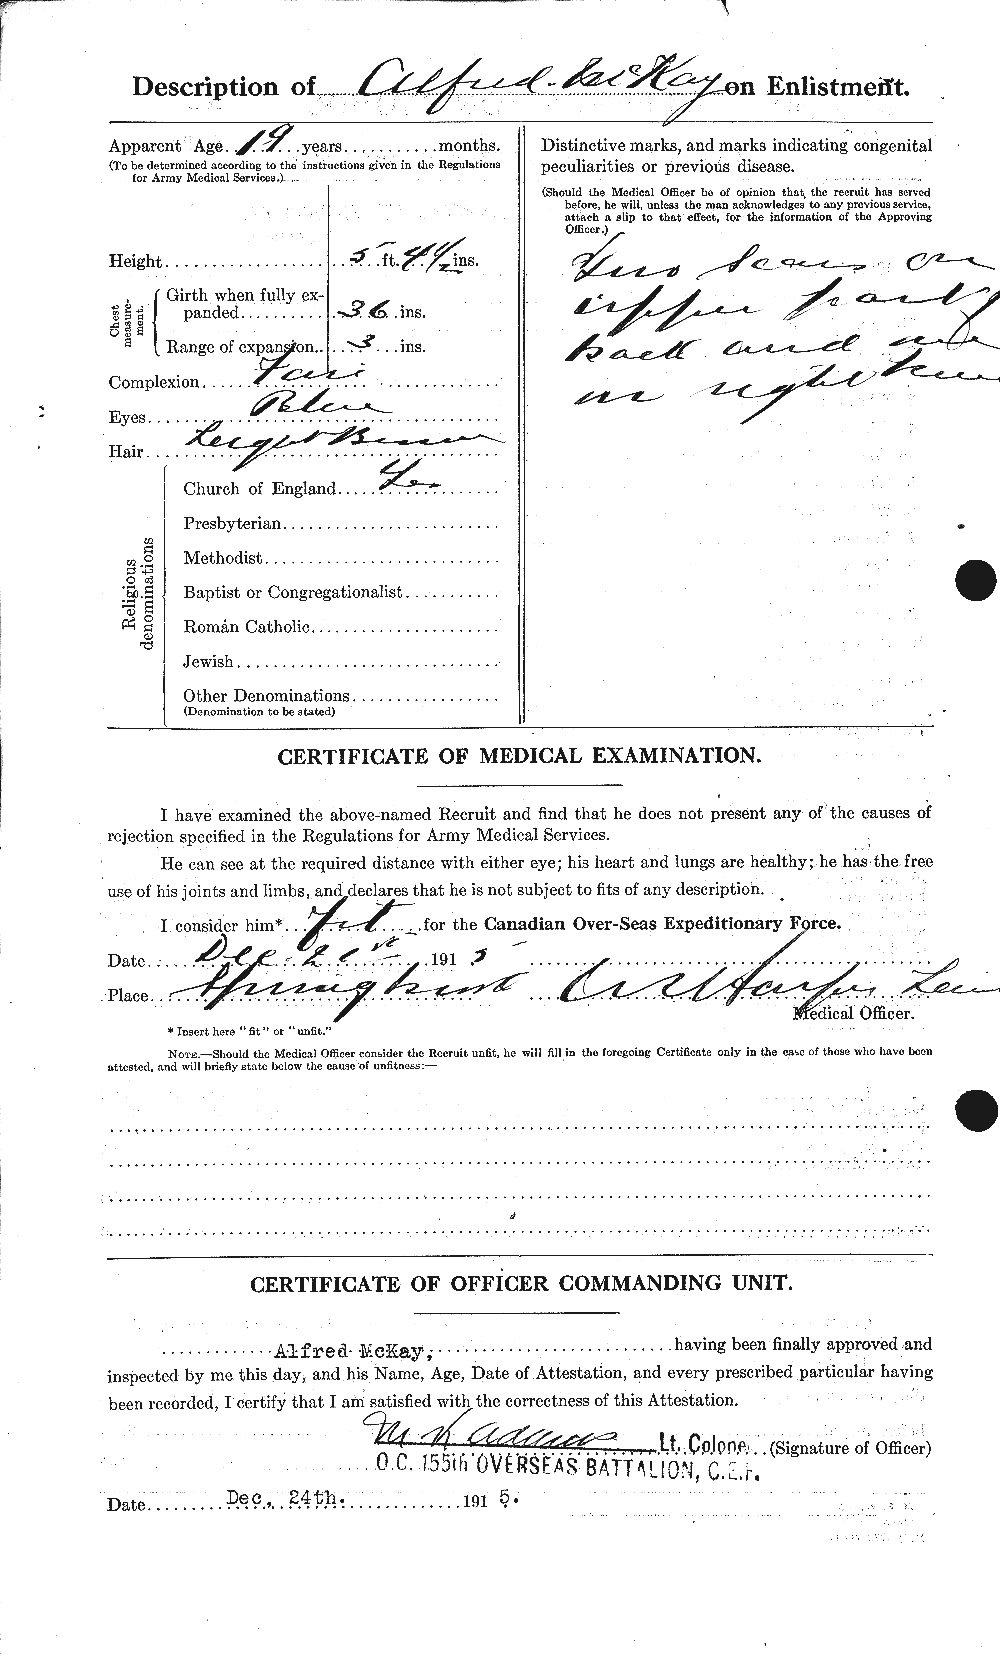 Dossiers du Personnel de la Première Guerre mondiale - CEC 530956b